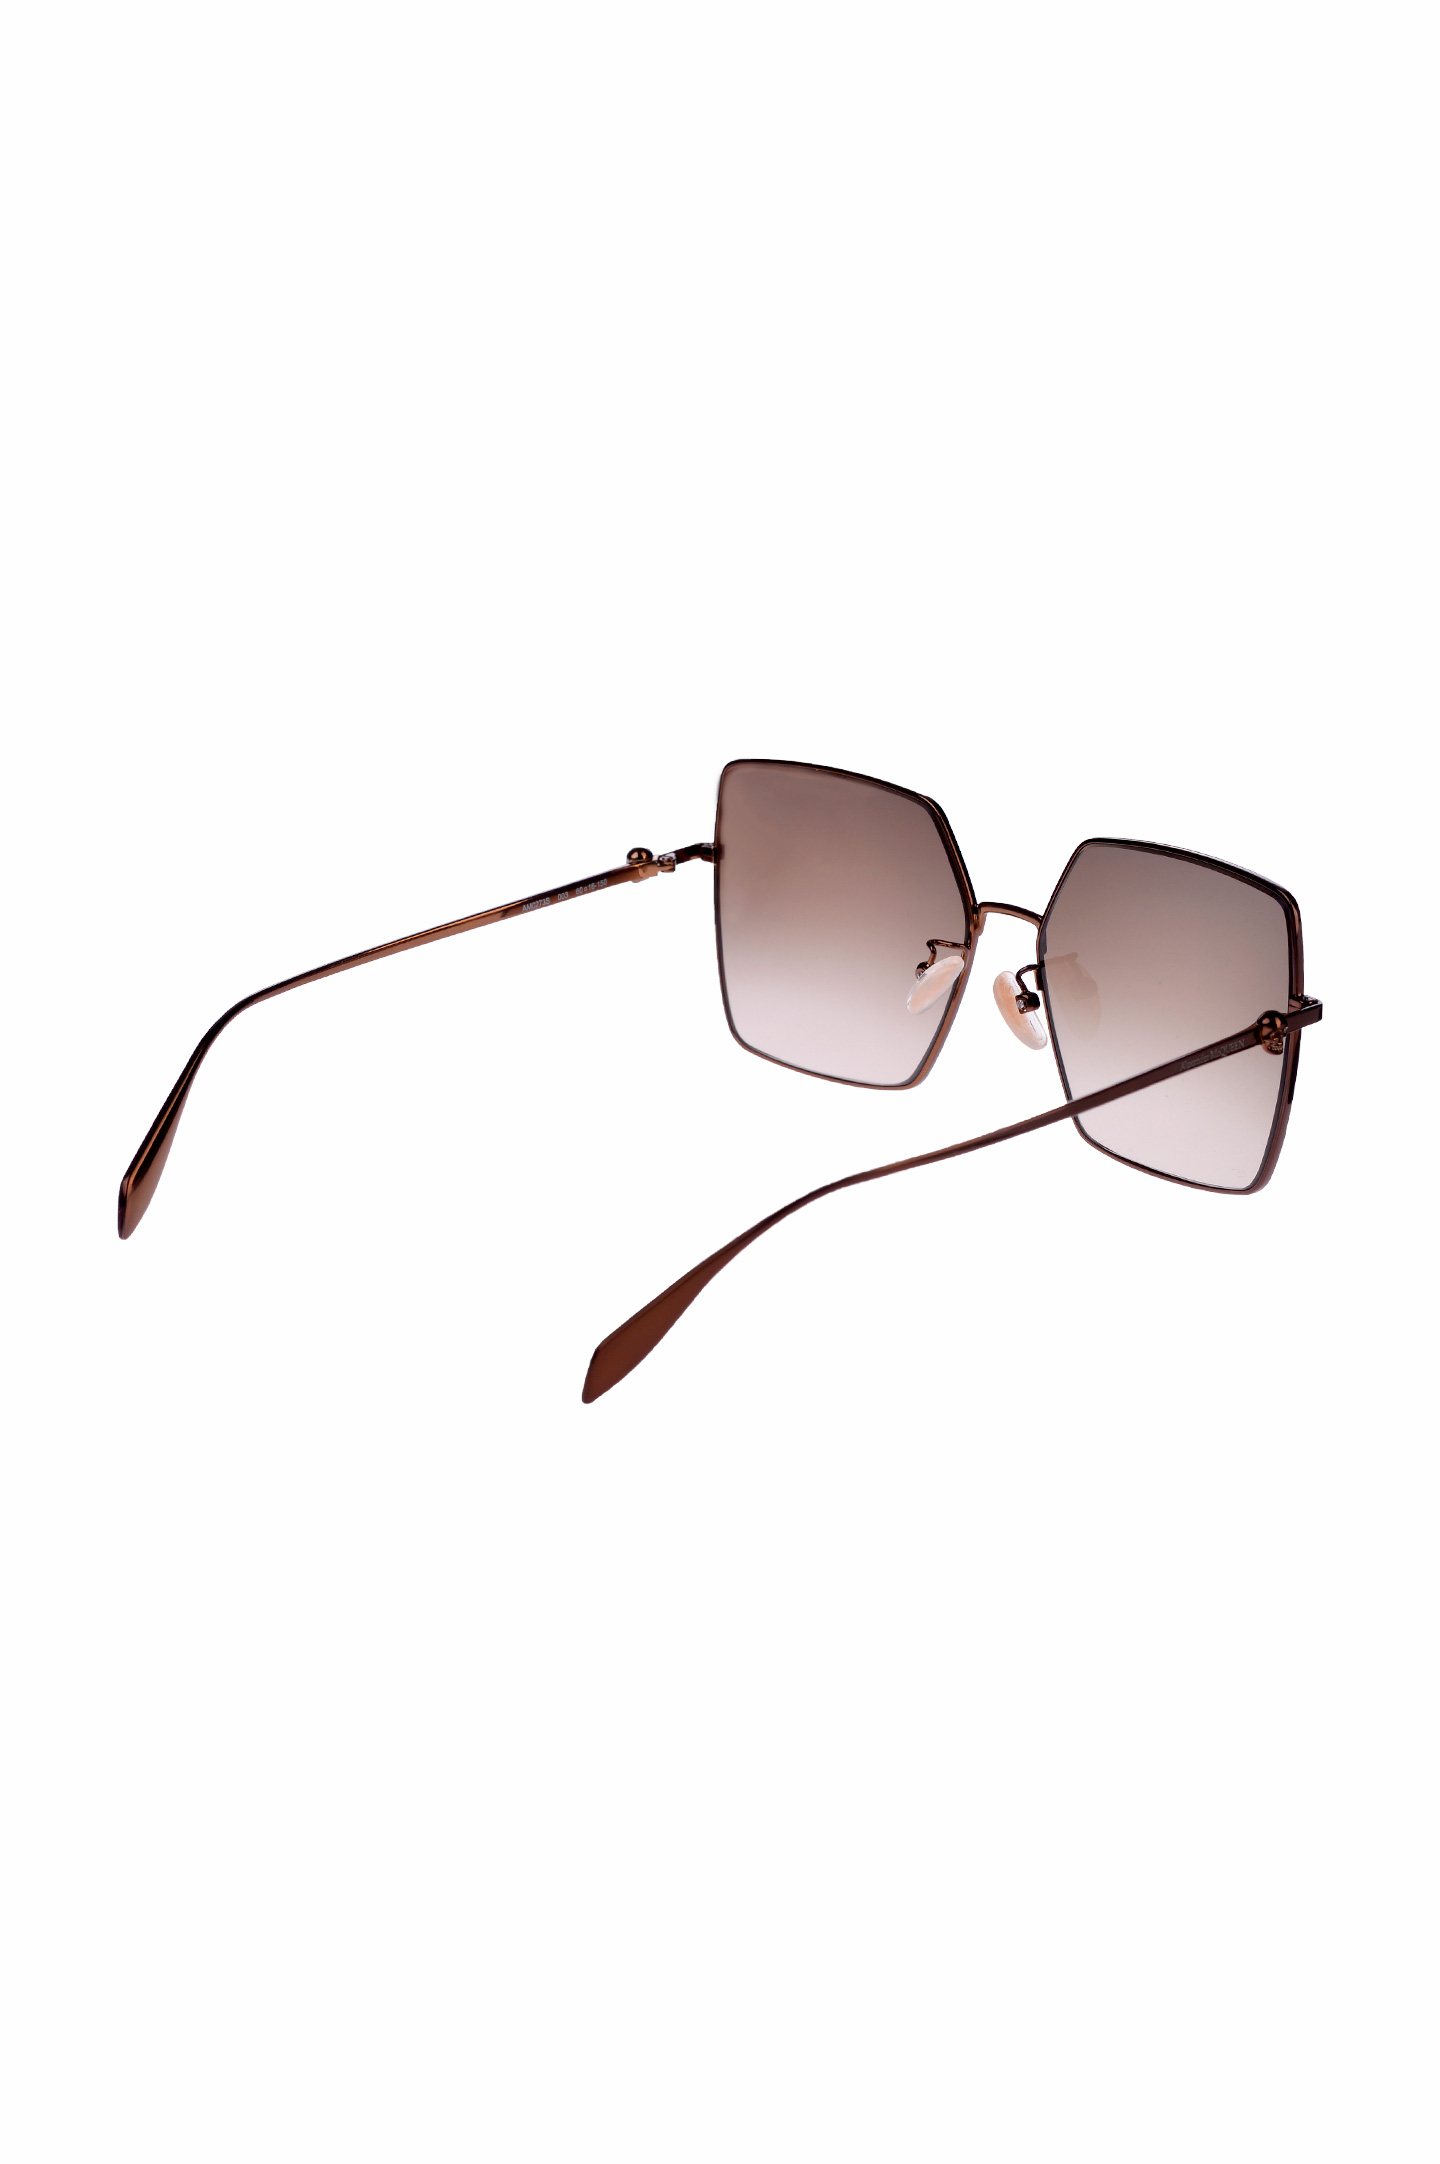 Солнцезащитные очки ALEXANDER MCQUEEN 634918 I3330, цвет: Коричневый, Женский